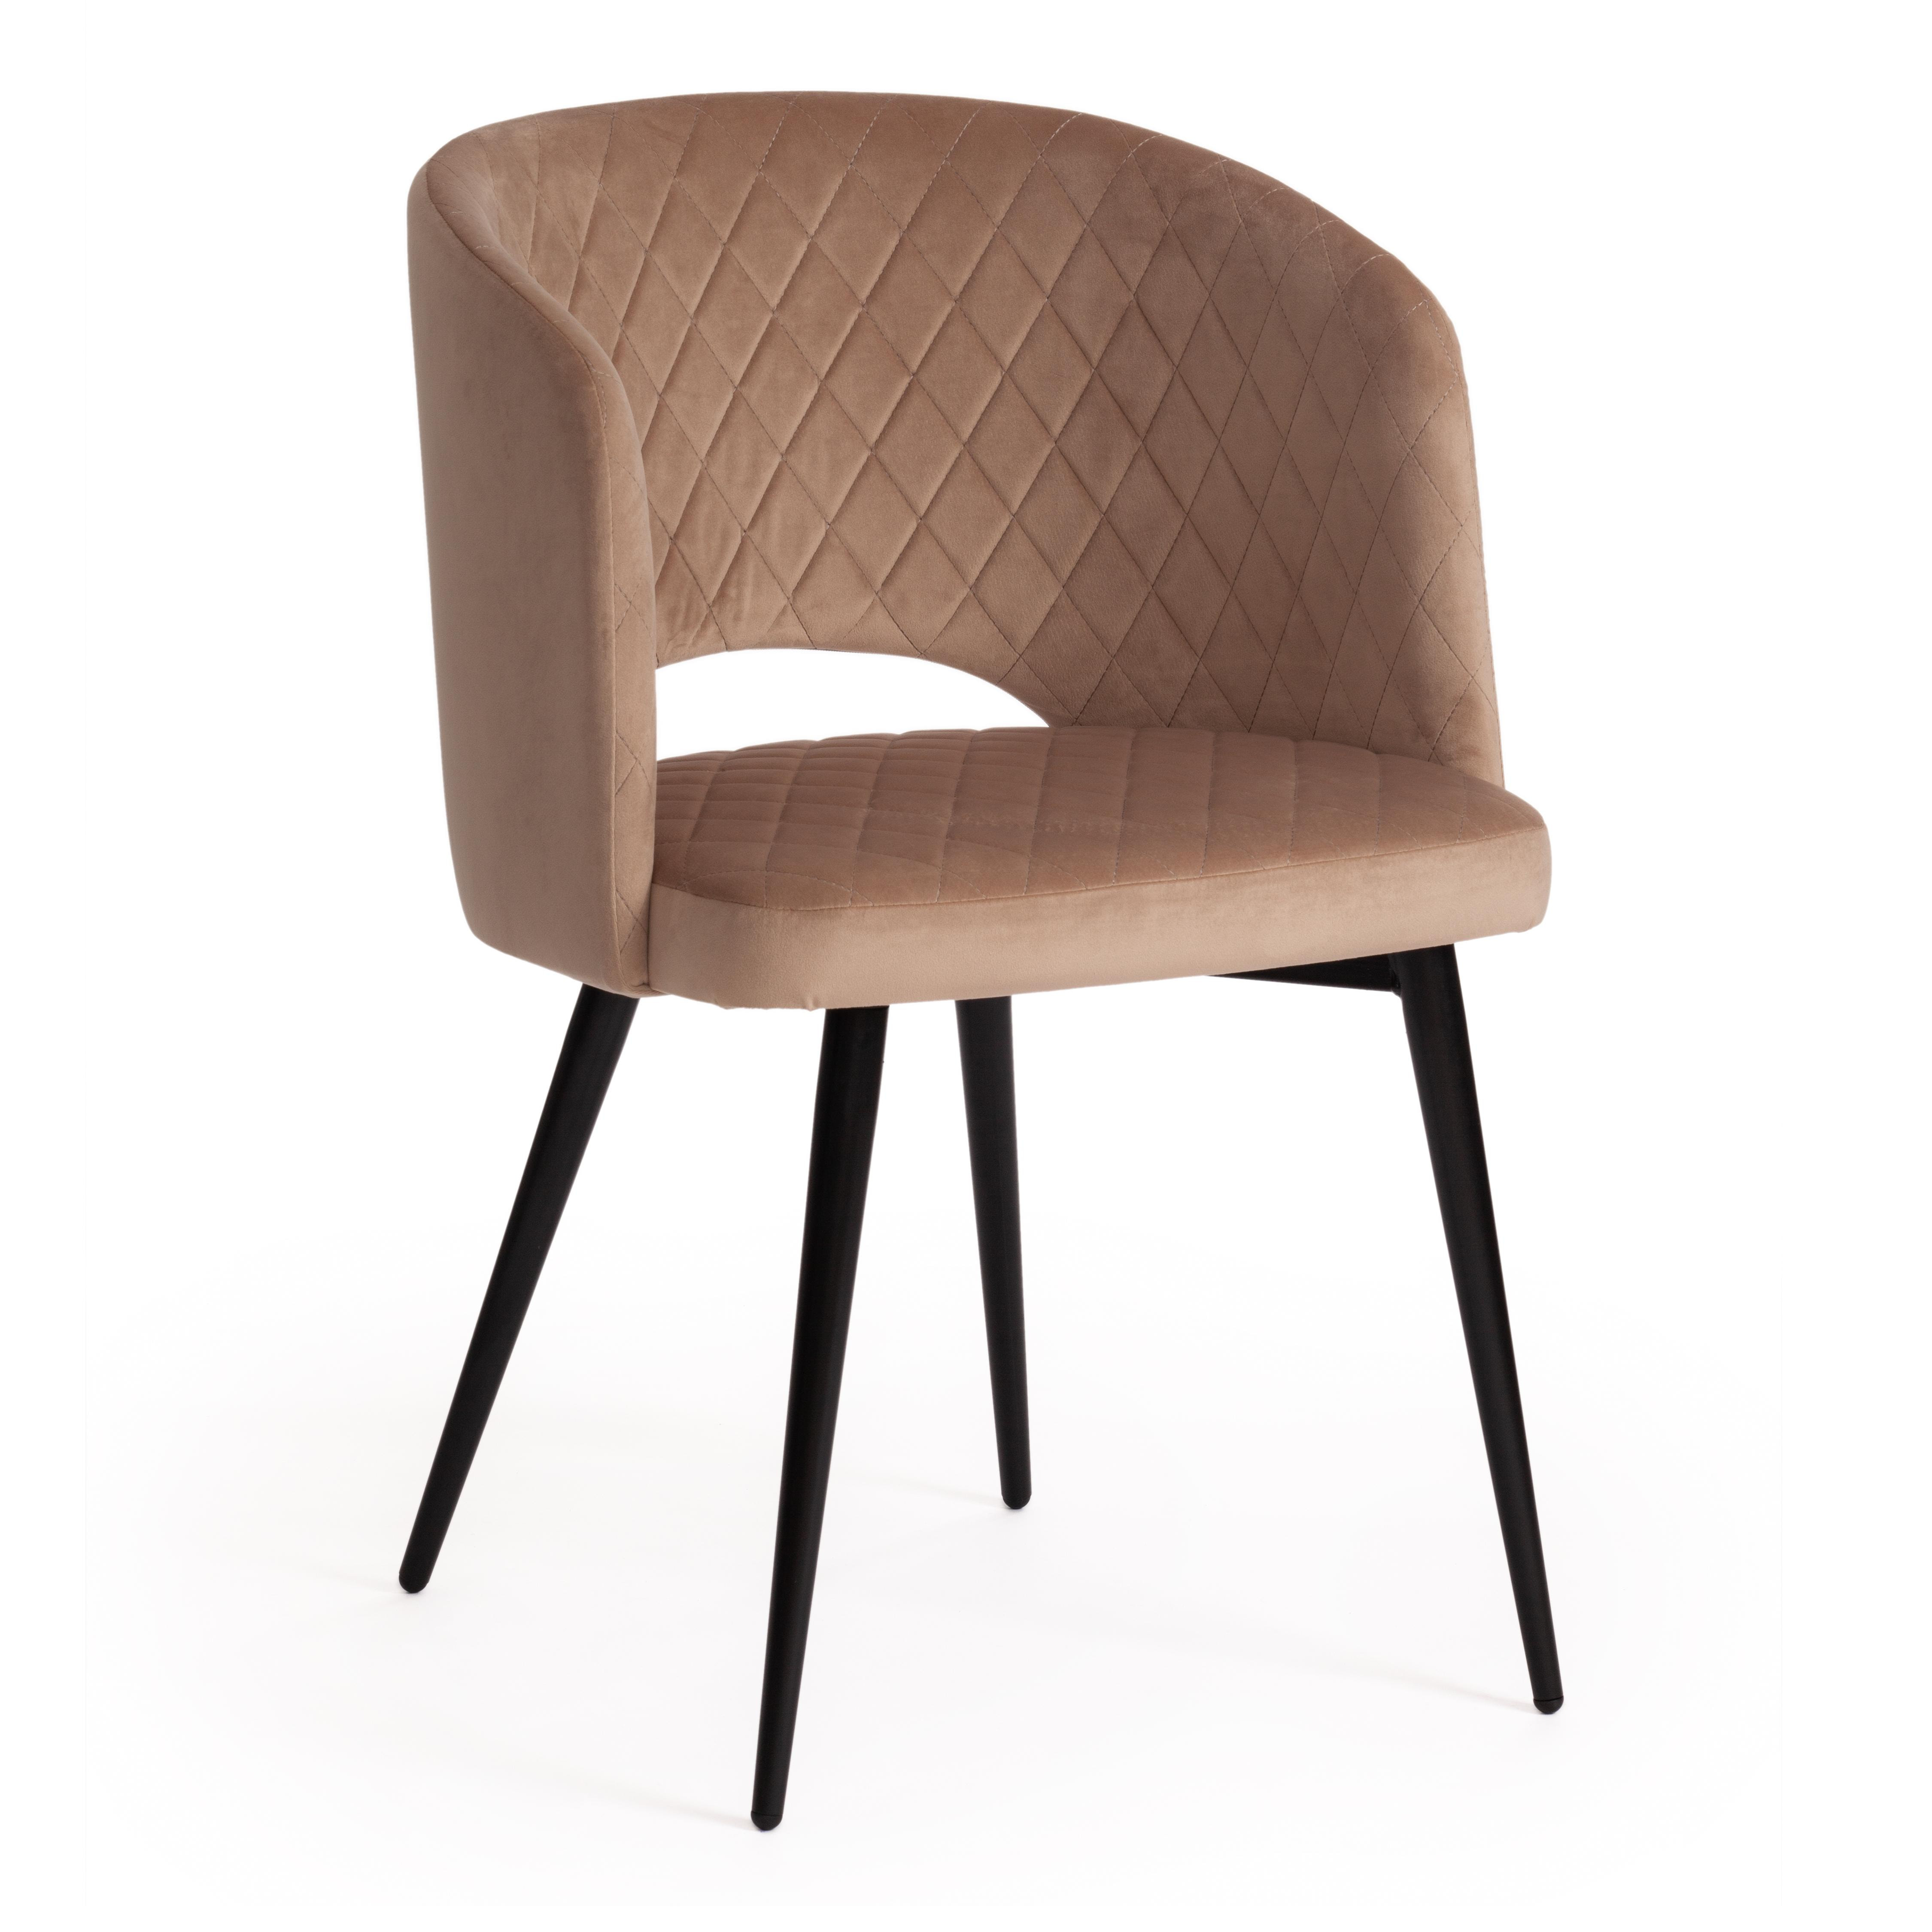 Кресло WIND (mod. 717) ткань/металл, 55х55х80 см, высота до сиденья 48 см, бежевый barkhat 5/черный